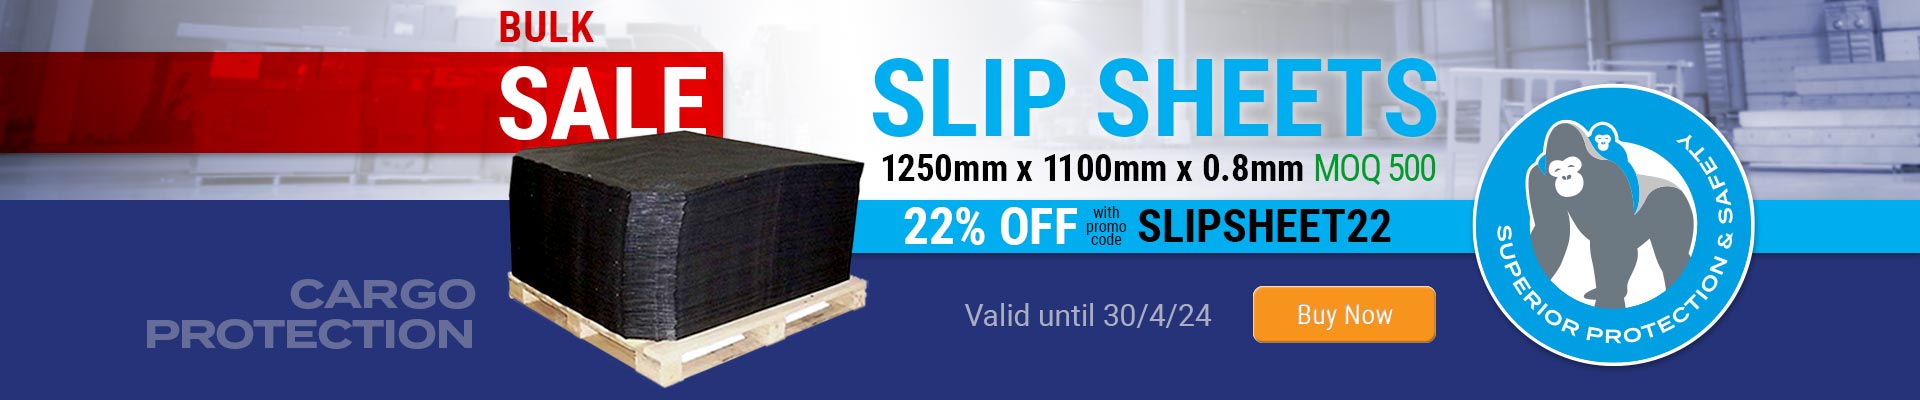 Slip Sheets Bulk Sale - Silverback